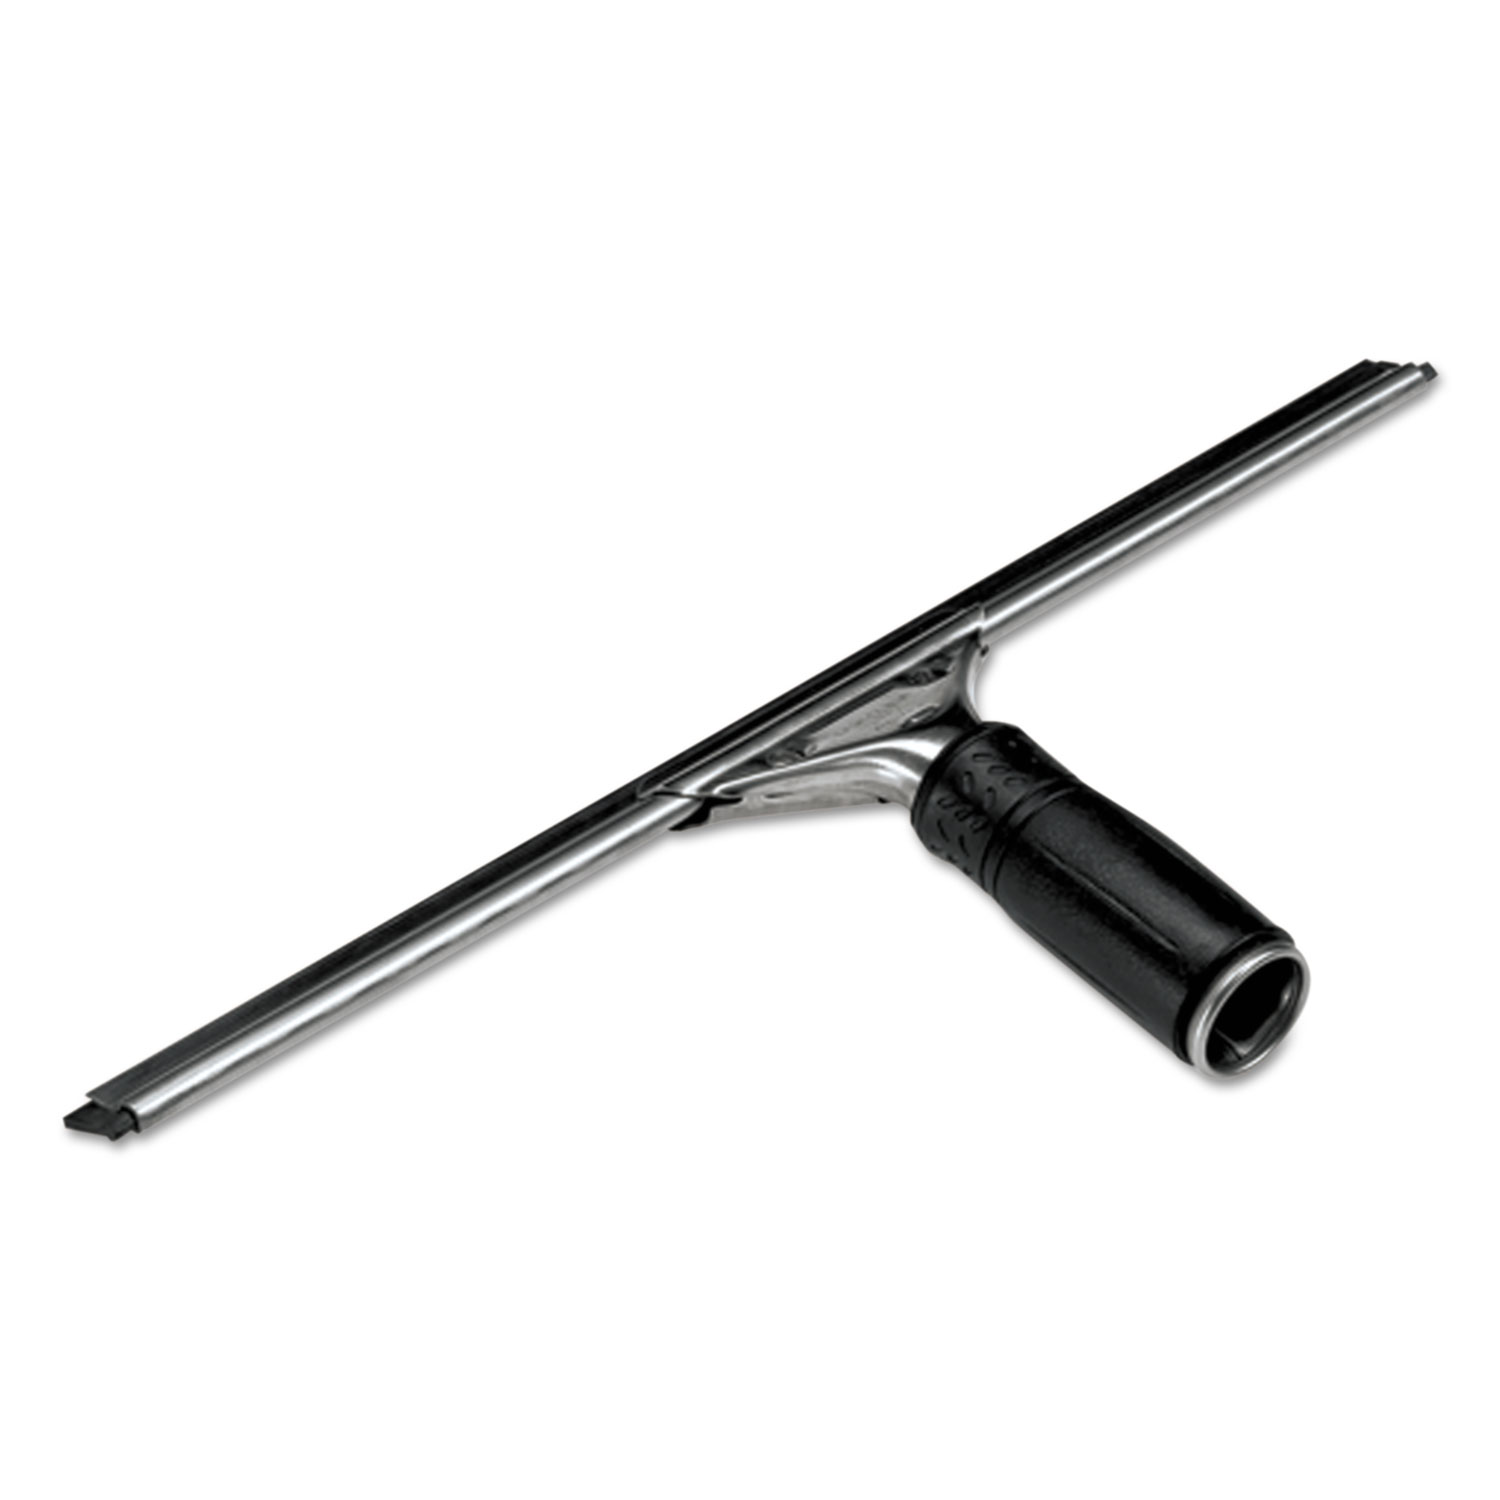  Unger PR300 Pro Stainless Steel Window Squeegee, 12 Wide Blade (UNGPR300) 